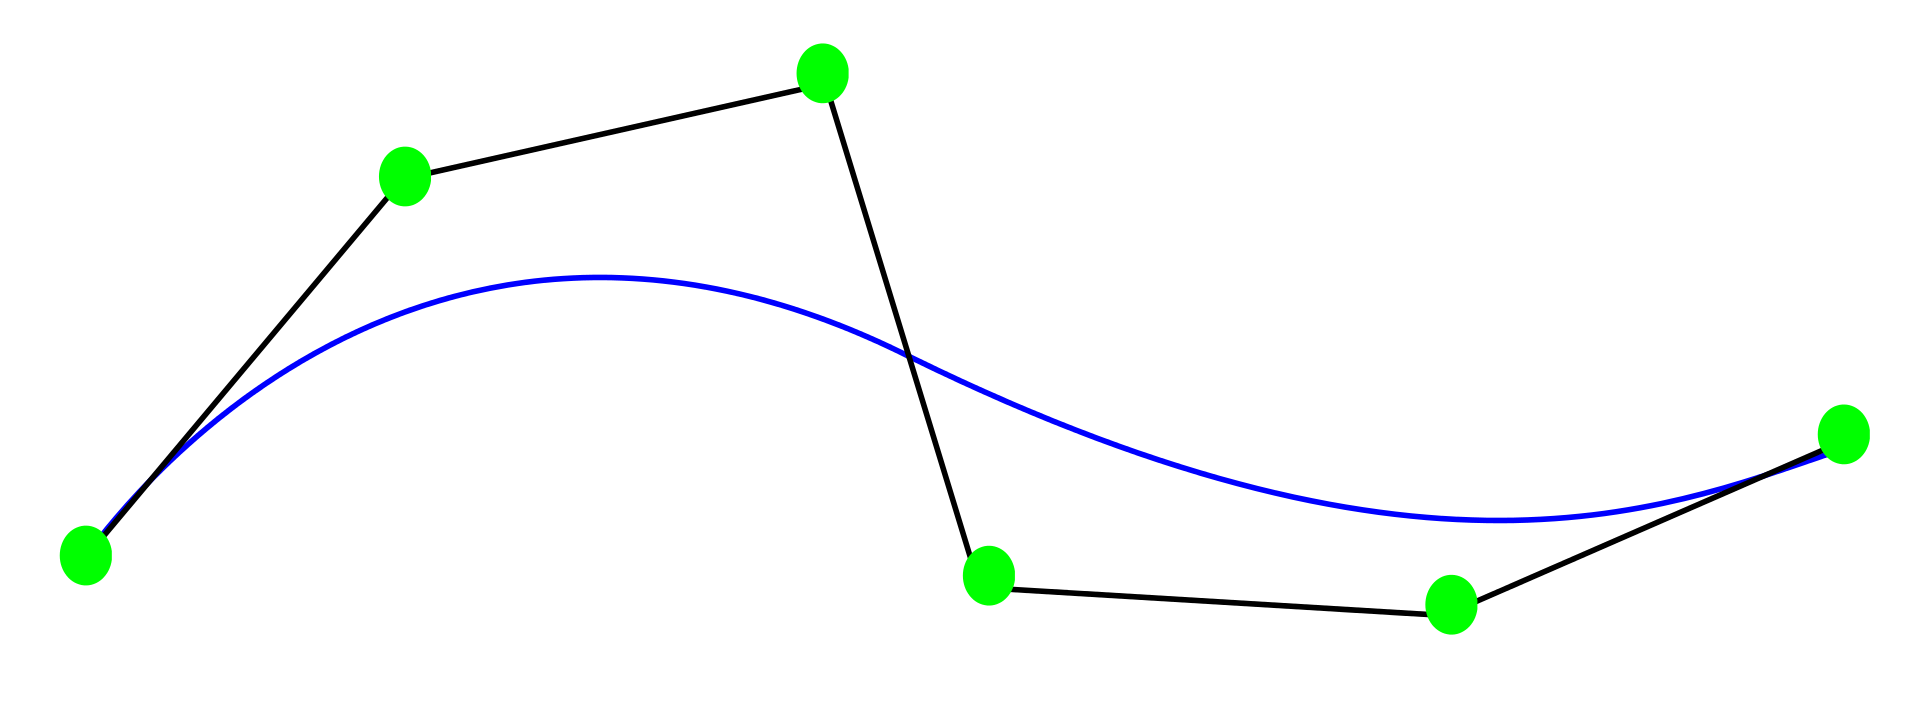 NURBS - Bezier curve